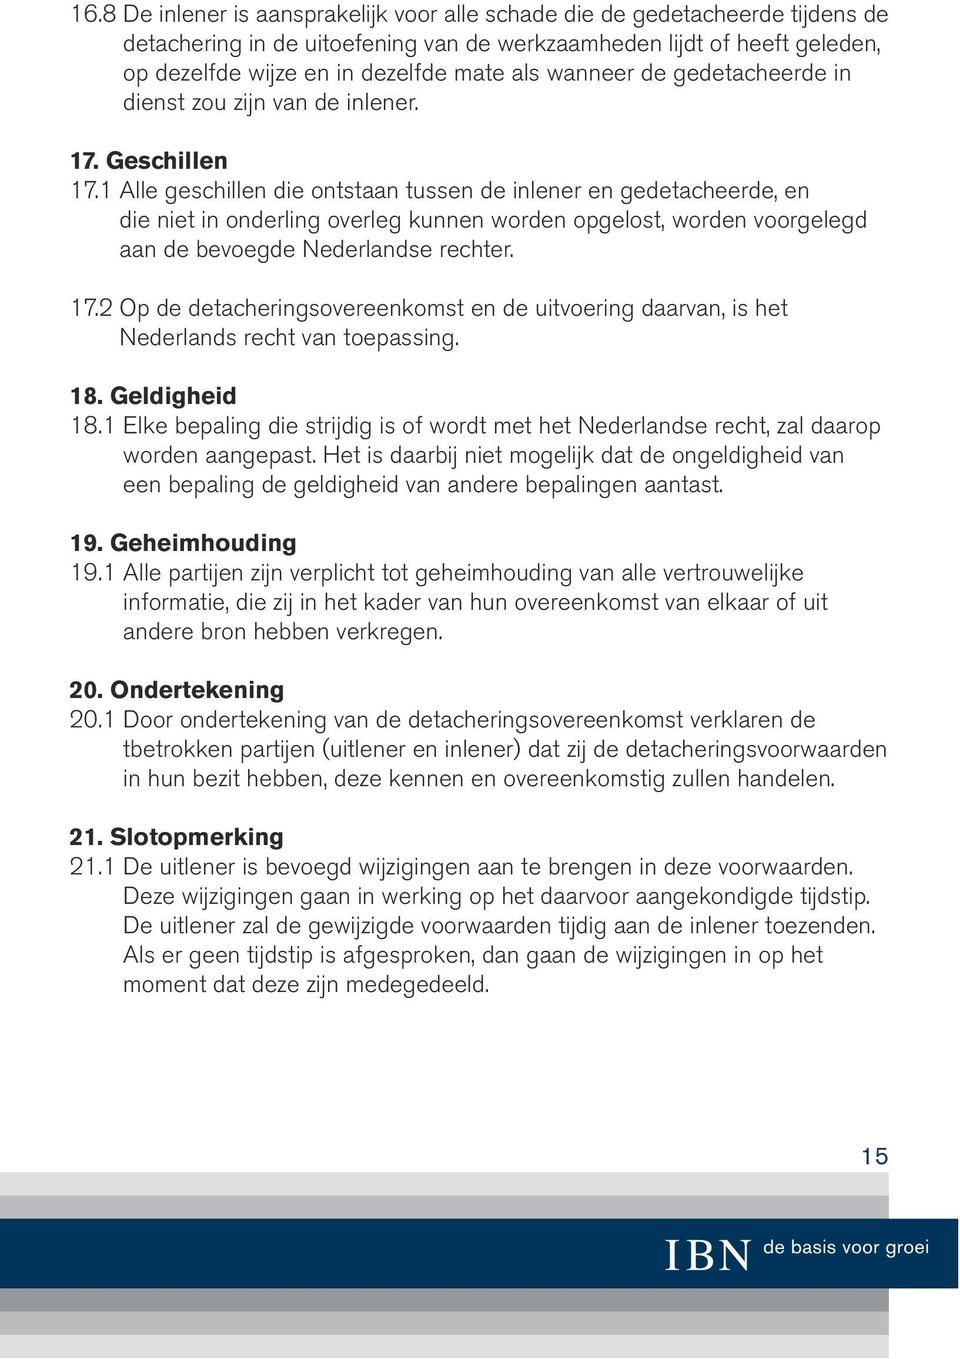 1 Alle geschillen die ontstaan tussen de inlener en gedetacheerde, en die niet in onderling overleg kunnen worden opgelost, worden voorgelegd aan de bevoegde Nederlandse rechter. 17.